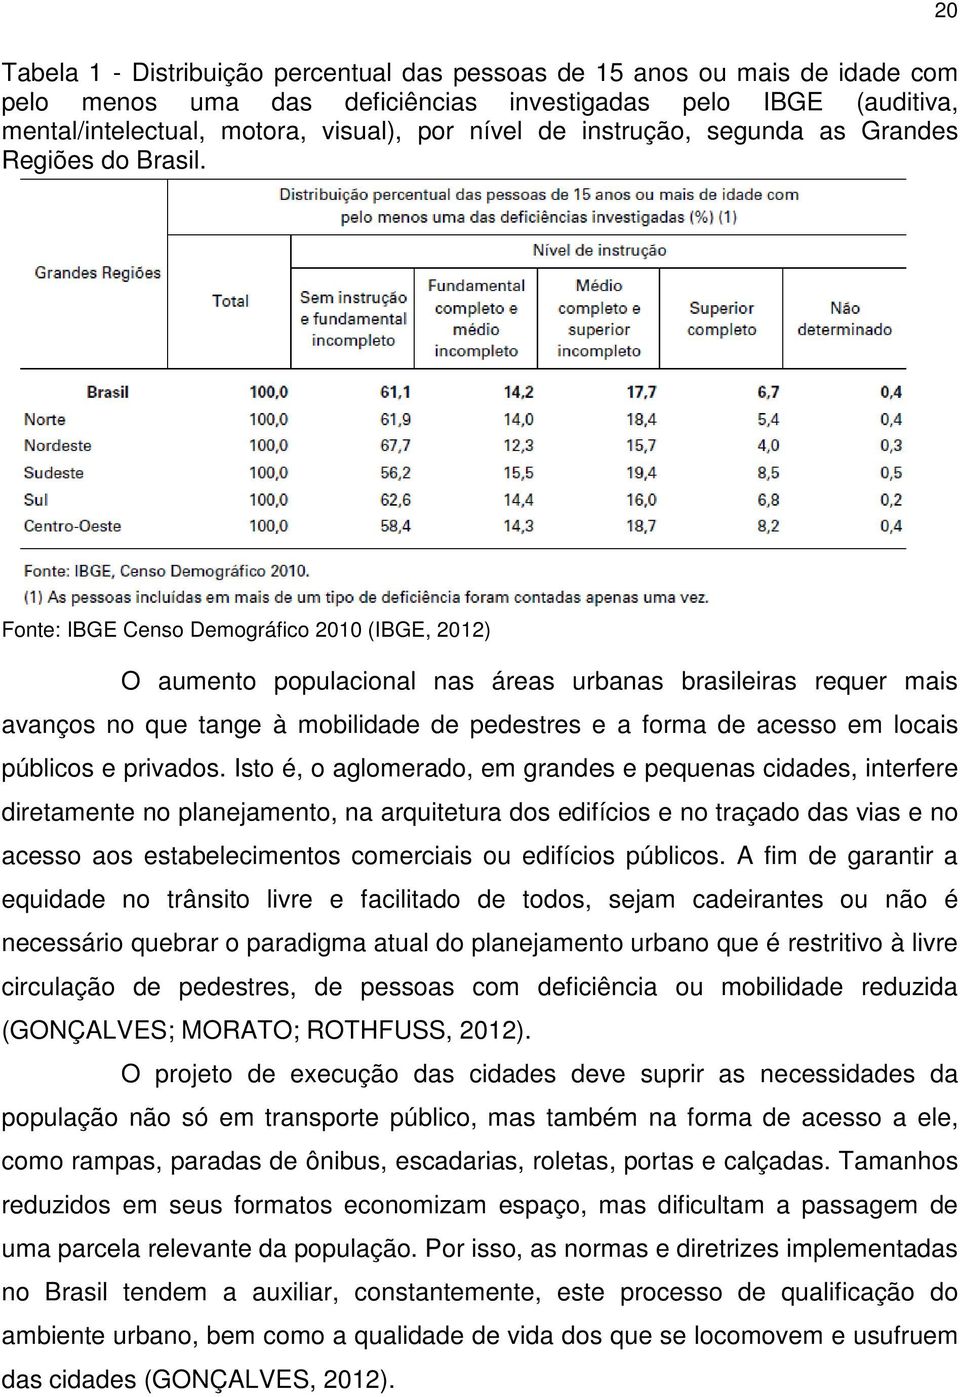 Fonte: IBGE Censo Demográfico 2010 (IBGE, 2012) O aumento populacional nas áreas urbanas brasileiras requer mais avanços no que tange à mobilidade de pedestres e a forma de acesso em locais públicos